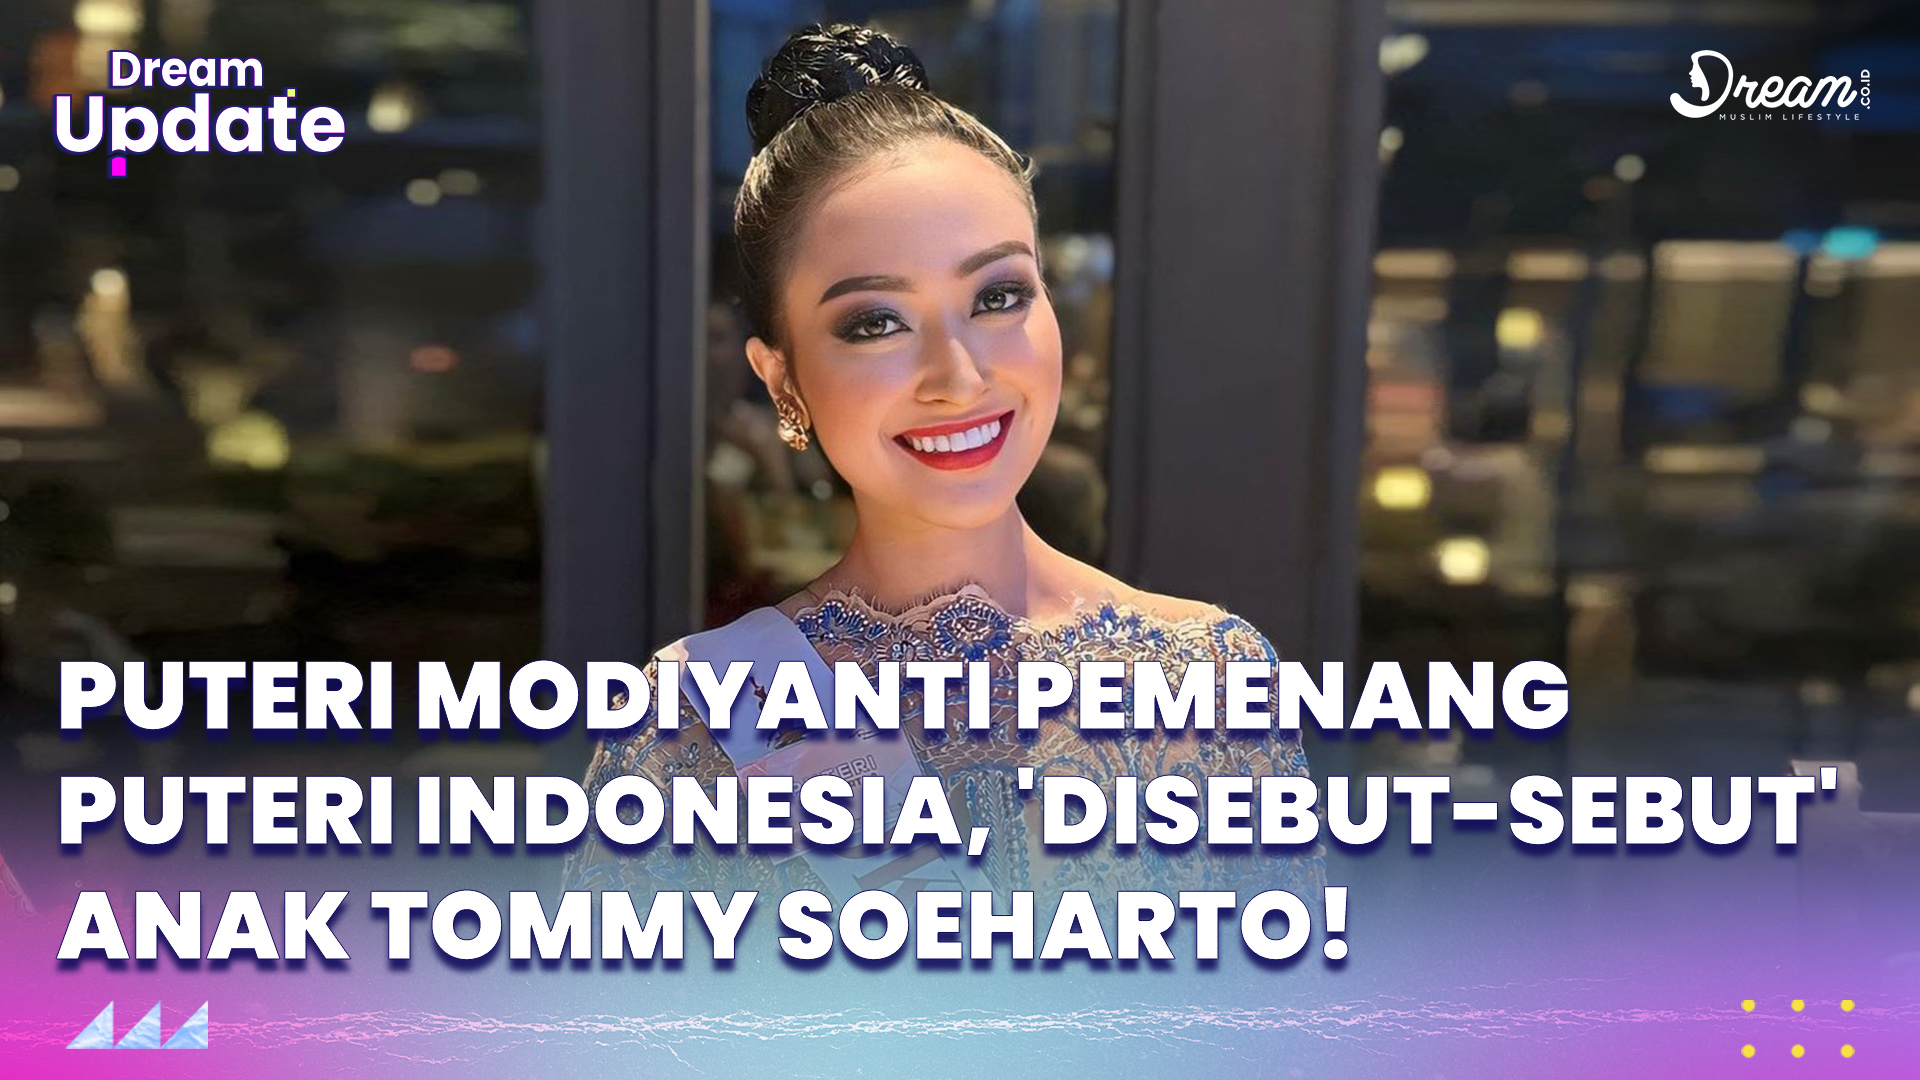 Puteri Modiyanti Pemenang Puteri Indonesia, Disebut-sebut Anak Tommy Soeharto?